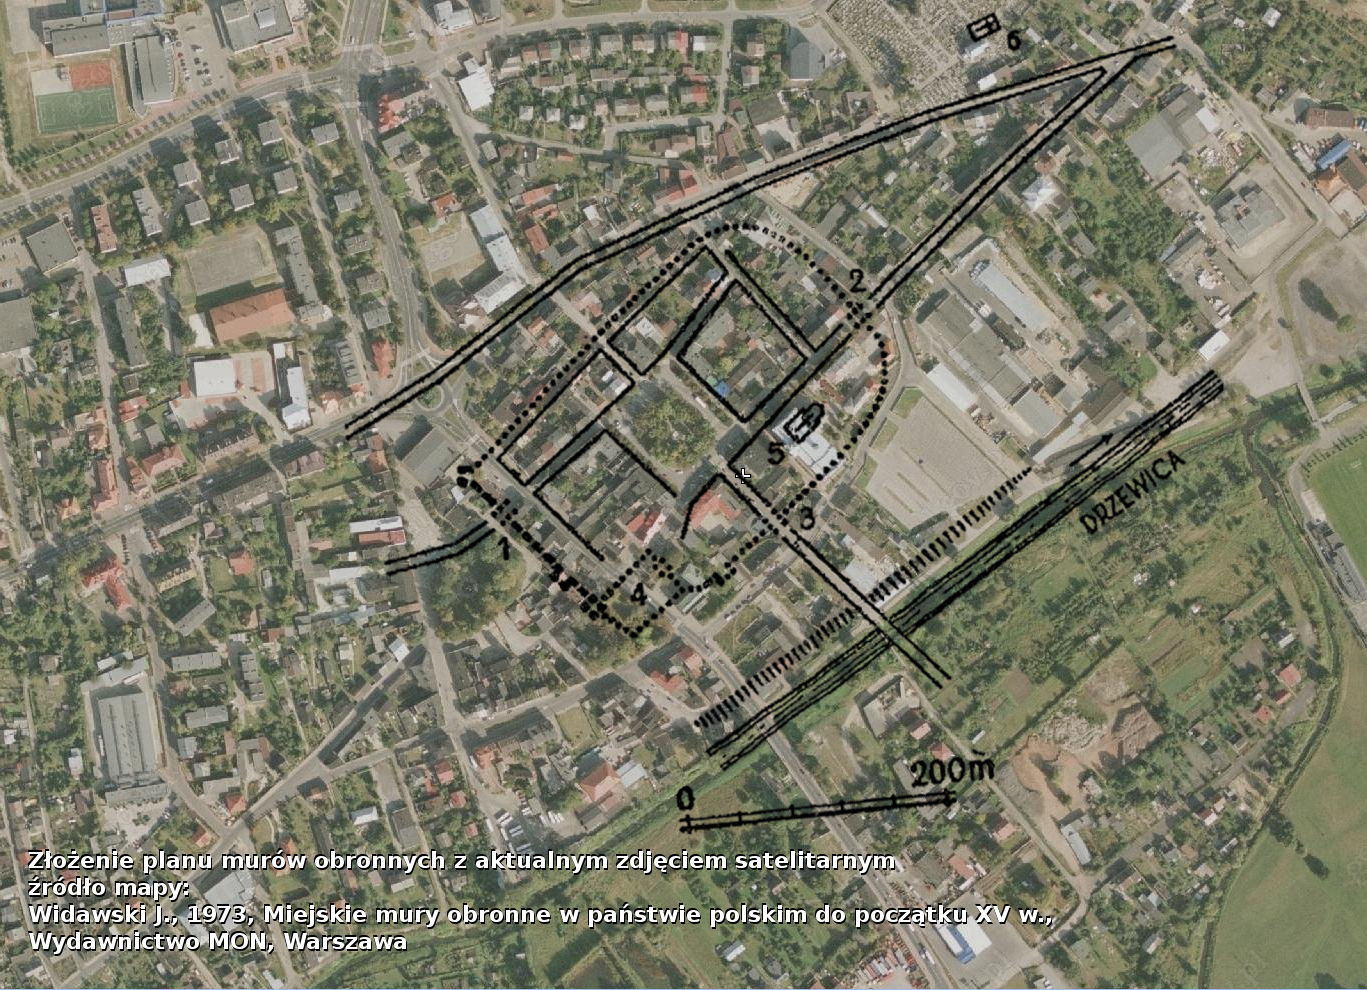 Złożenie planów murów miejskich z aktualnym zdjęciem satelitarnym Opoczna